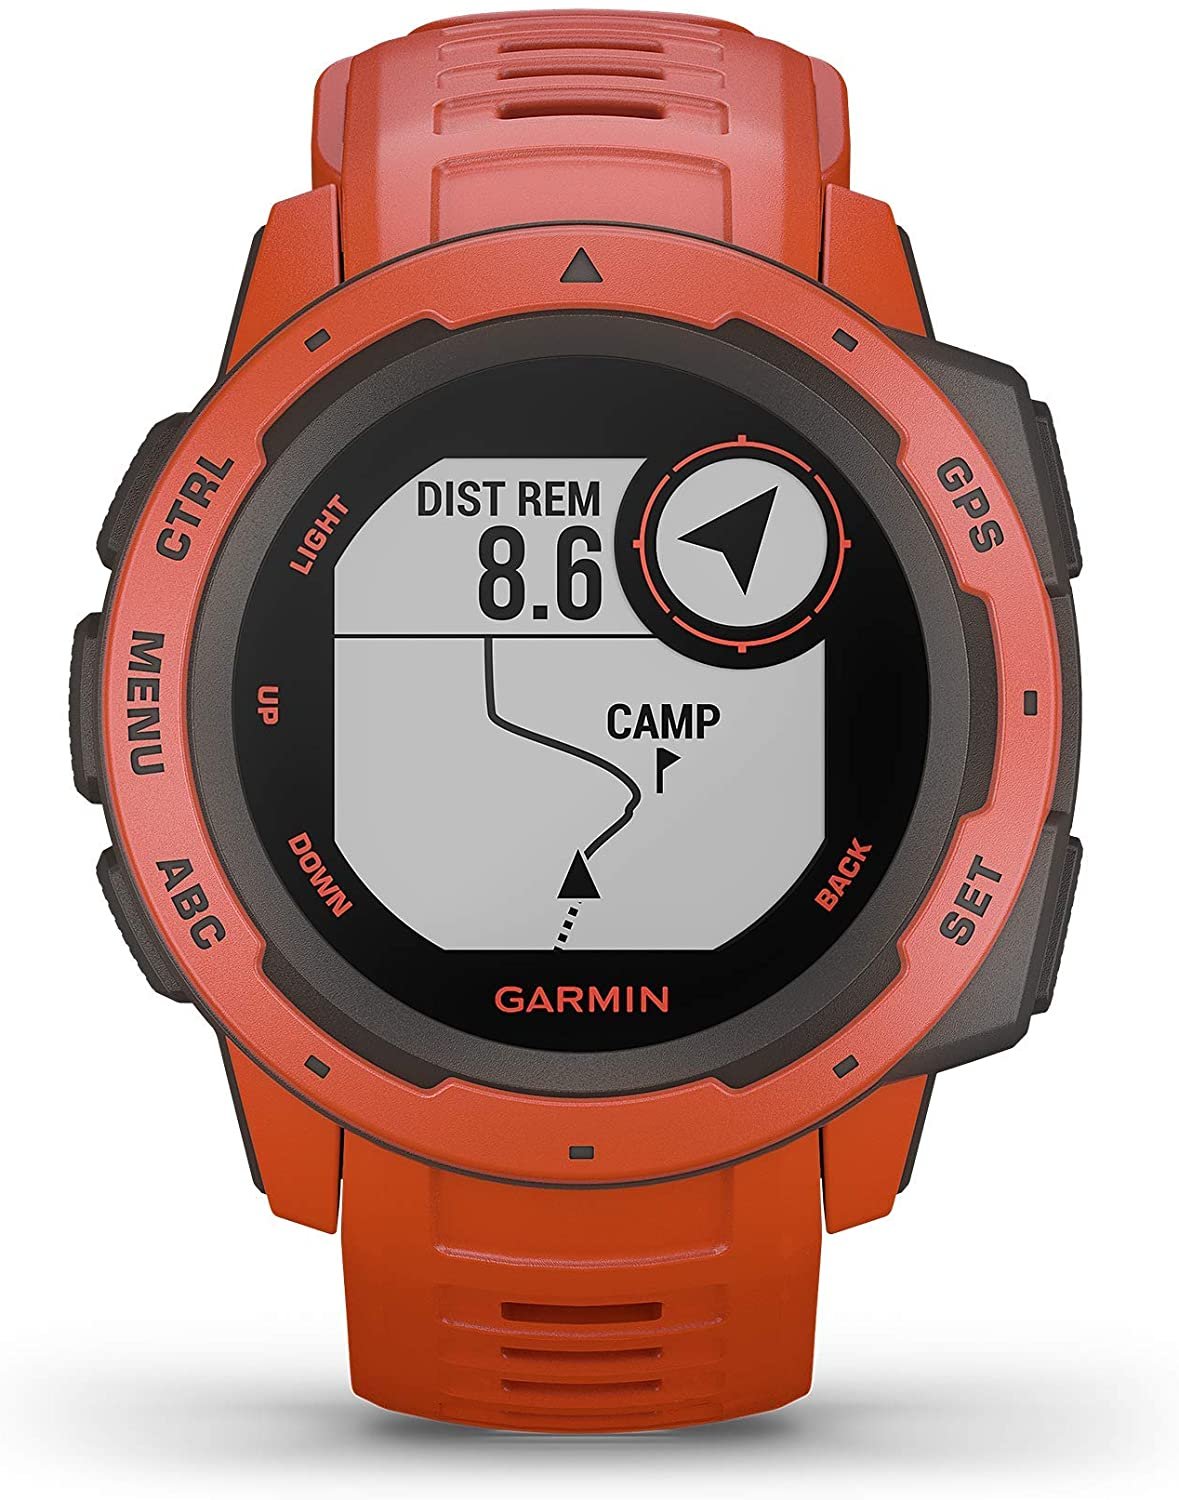 Garmin Instinct-reloj inteligente resistente con GPS, Glonass y Galileo, control del ritmo cardíaco, brújula de 3 ejes